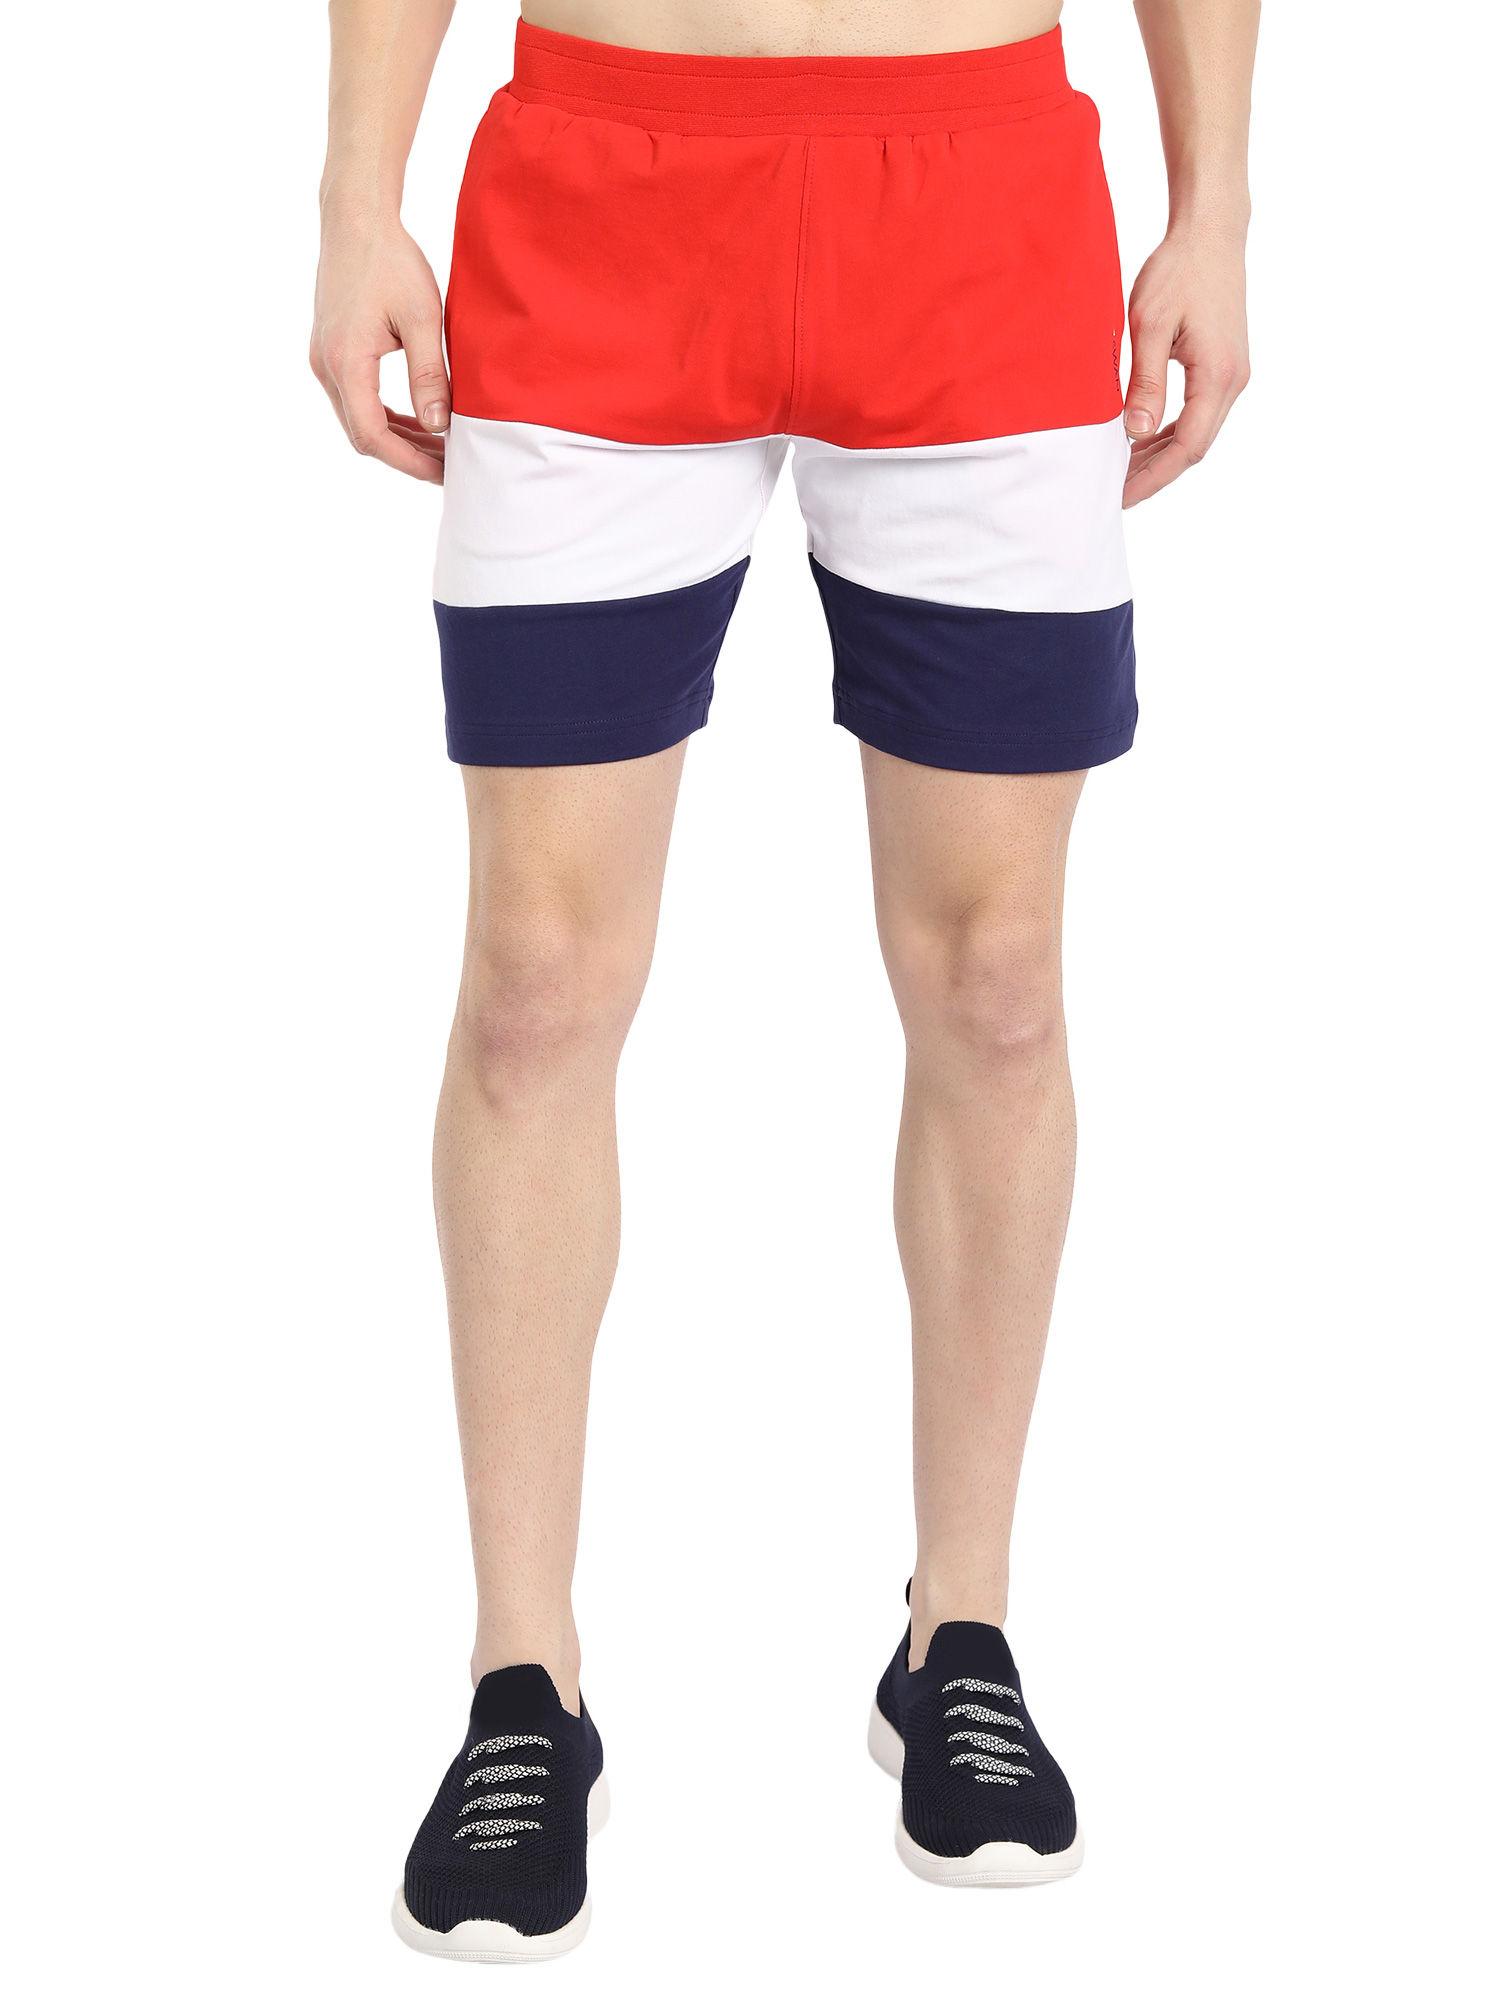 cotton-rich-lycra-colorblock-shorts-in-multicolor